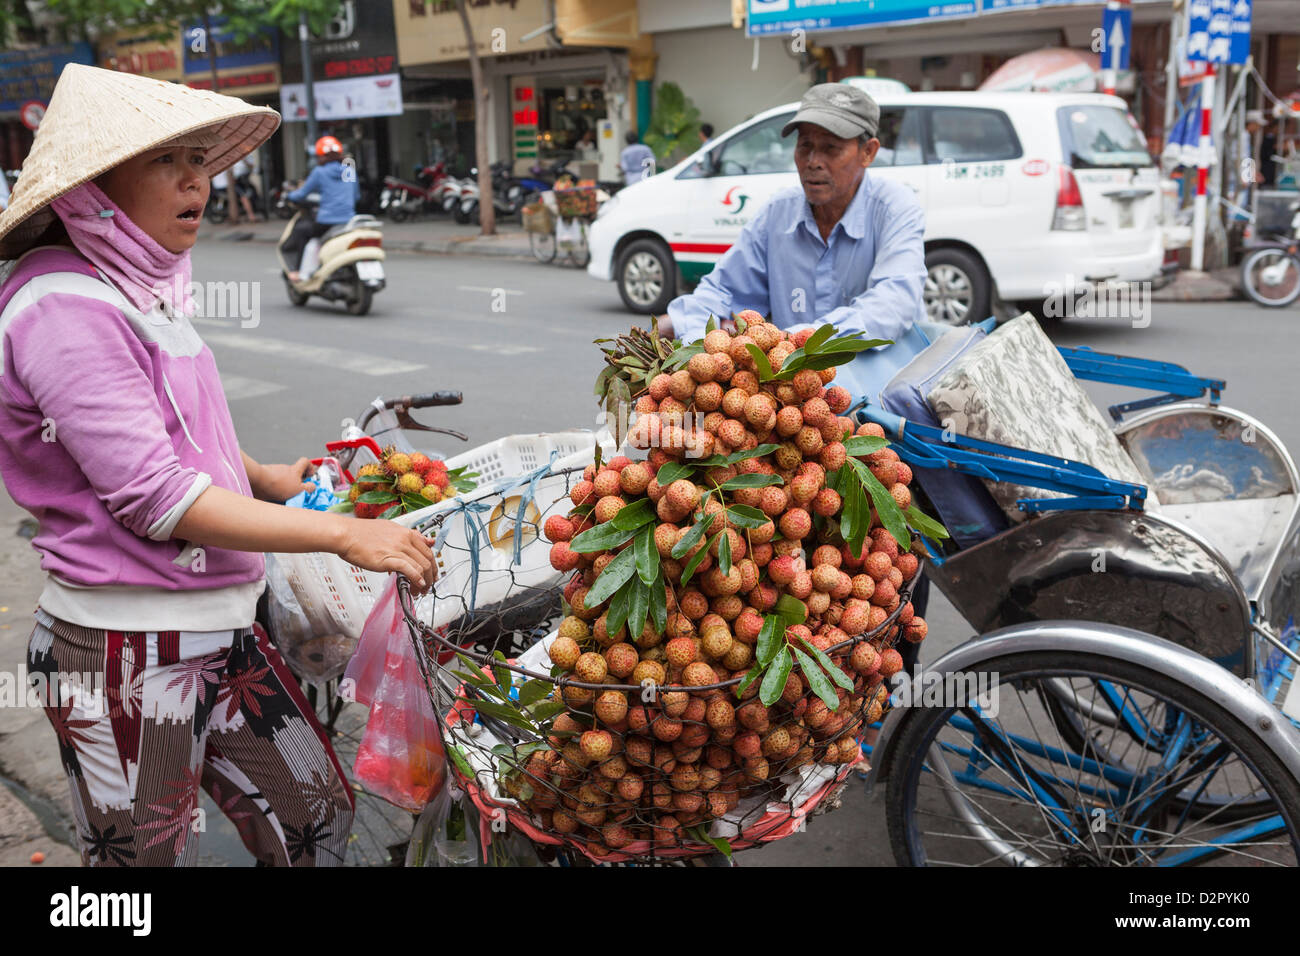 Ein Zyklus-Rikscha-Fahrer stoppt, um Obst zu kaufen, von einer Dame außerhalb Ben Thanh Market, Ho Chi Minh, Vietnam, Indochina Stockfoto